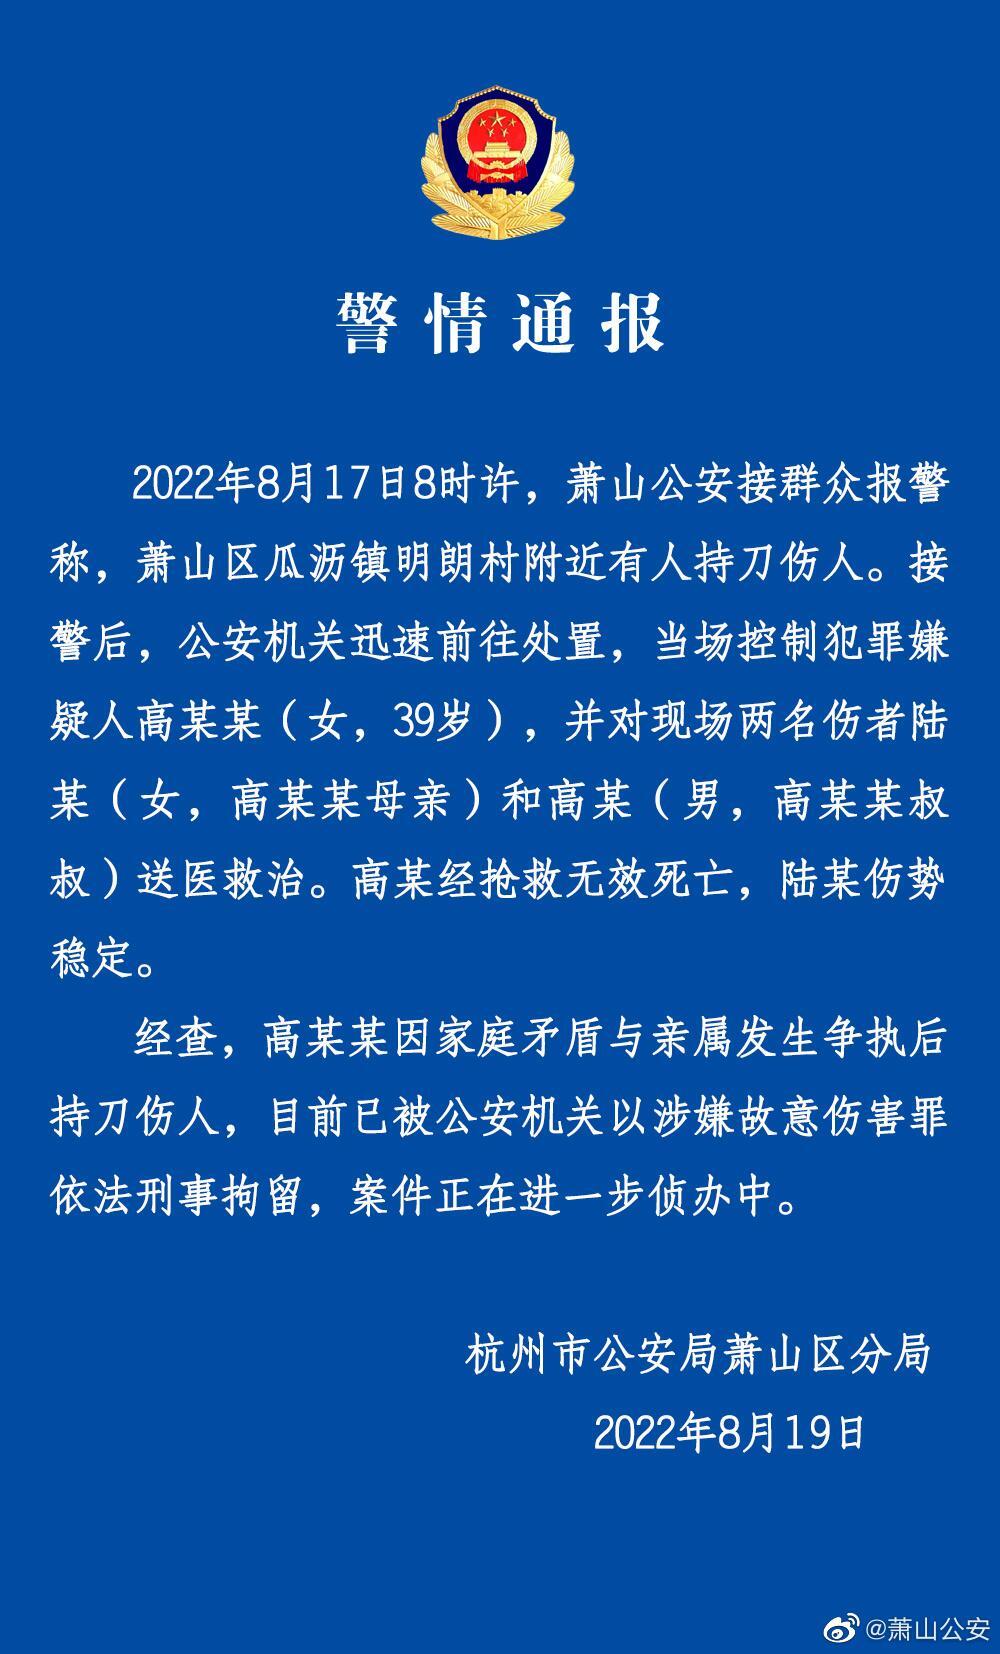 杭州一女子为买车砍伤母亲砍死小叔是怎么回事，关于杭州两女子被砍的新消息。